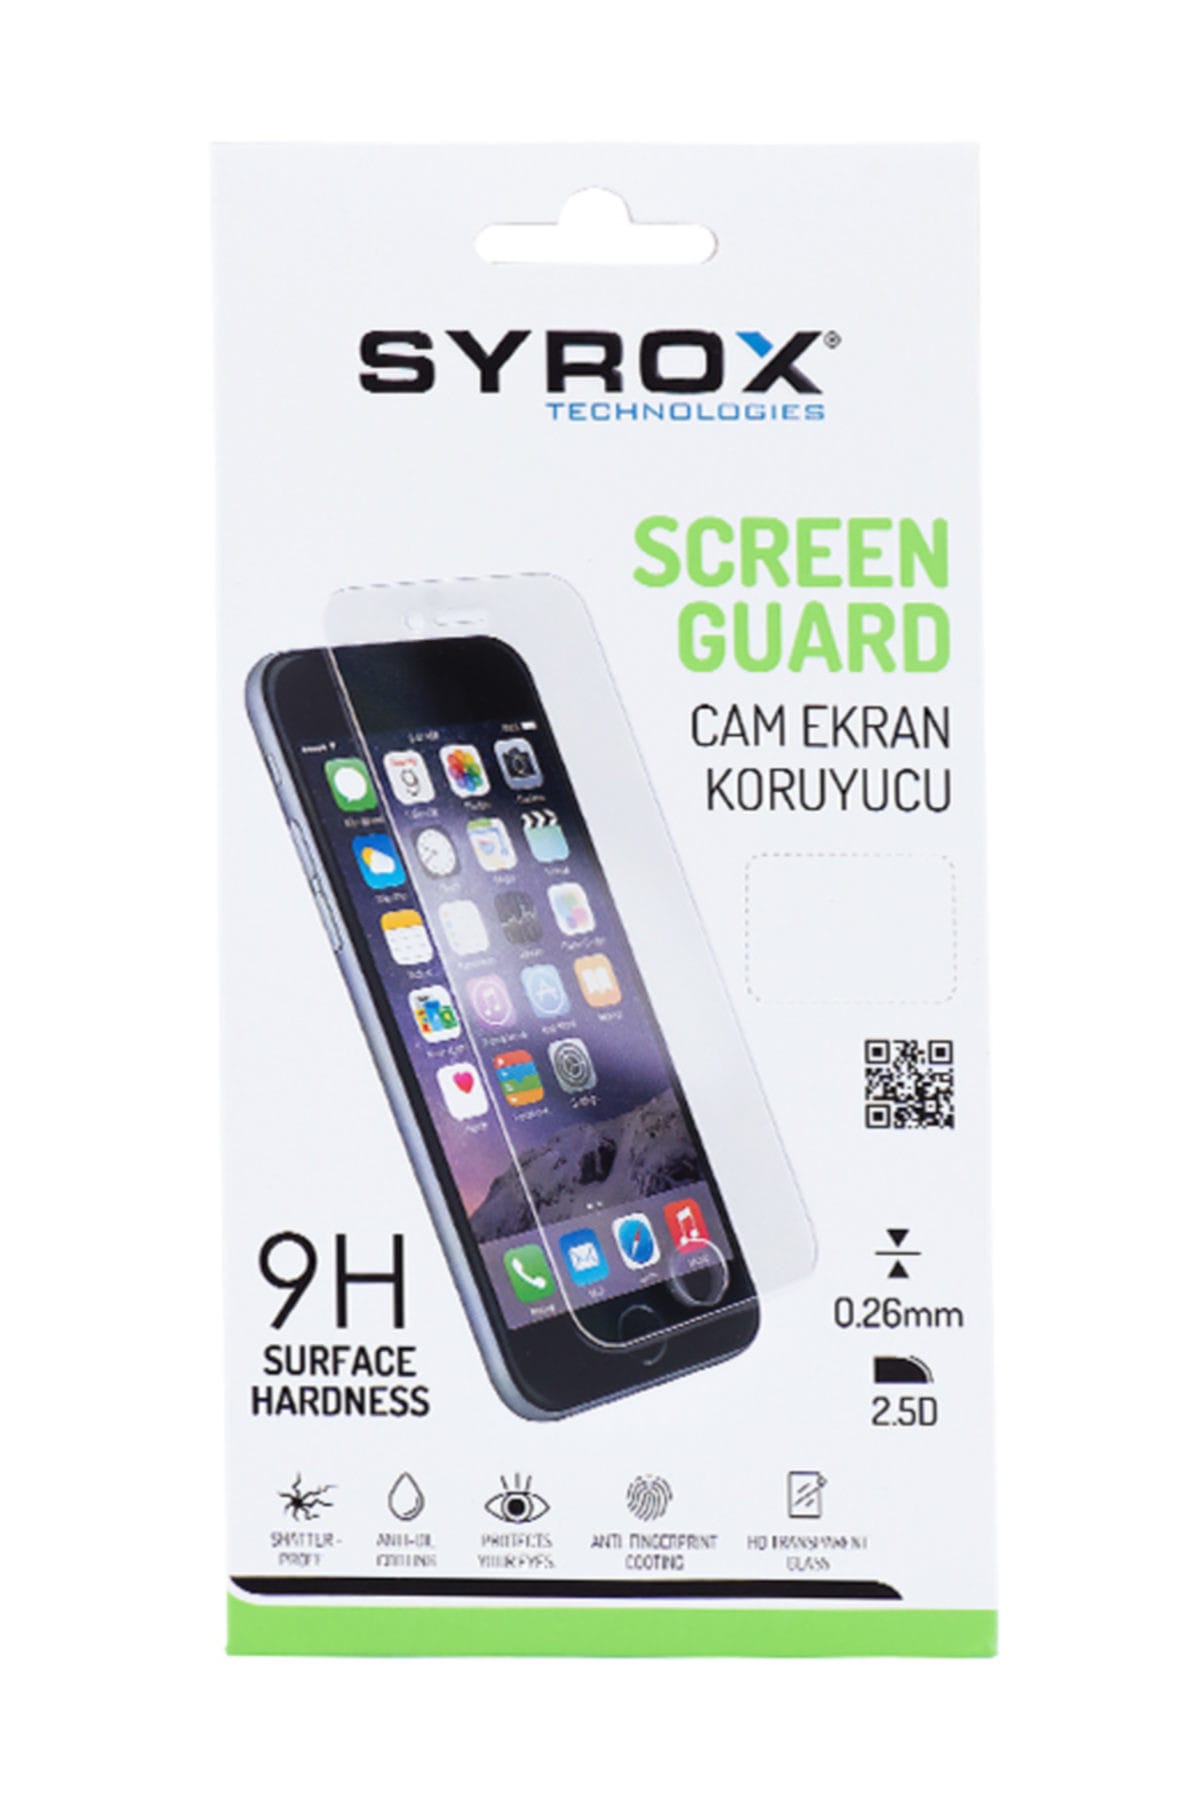 gürültü, ses mavi işten çıkarmak  Syrox Samsung Note 4 Cam Ekran Koruyucu Fiyatı, Yorumları - TRENDYOL